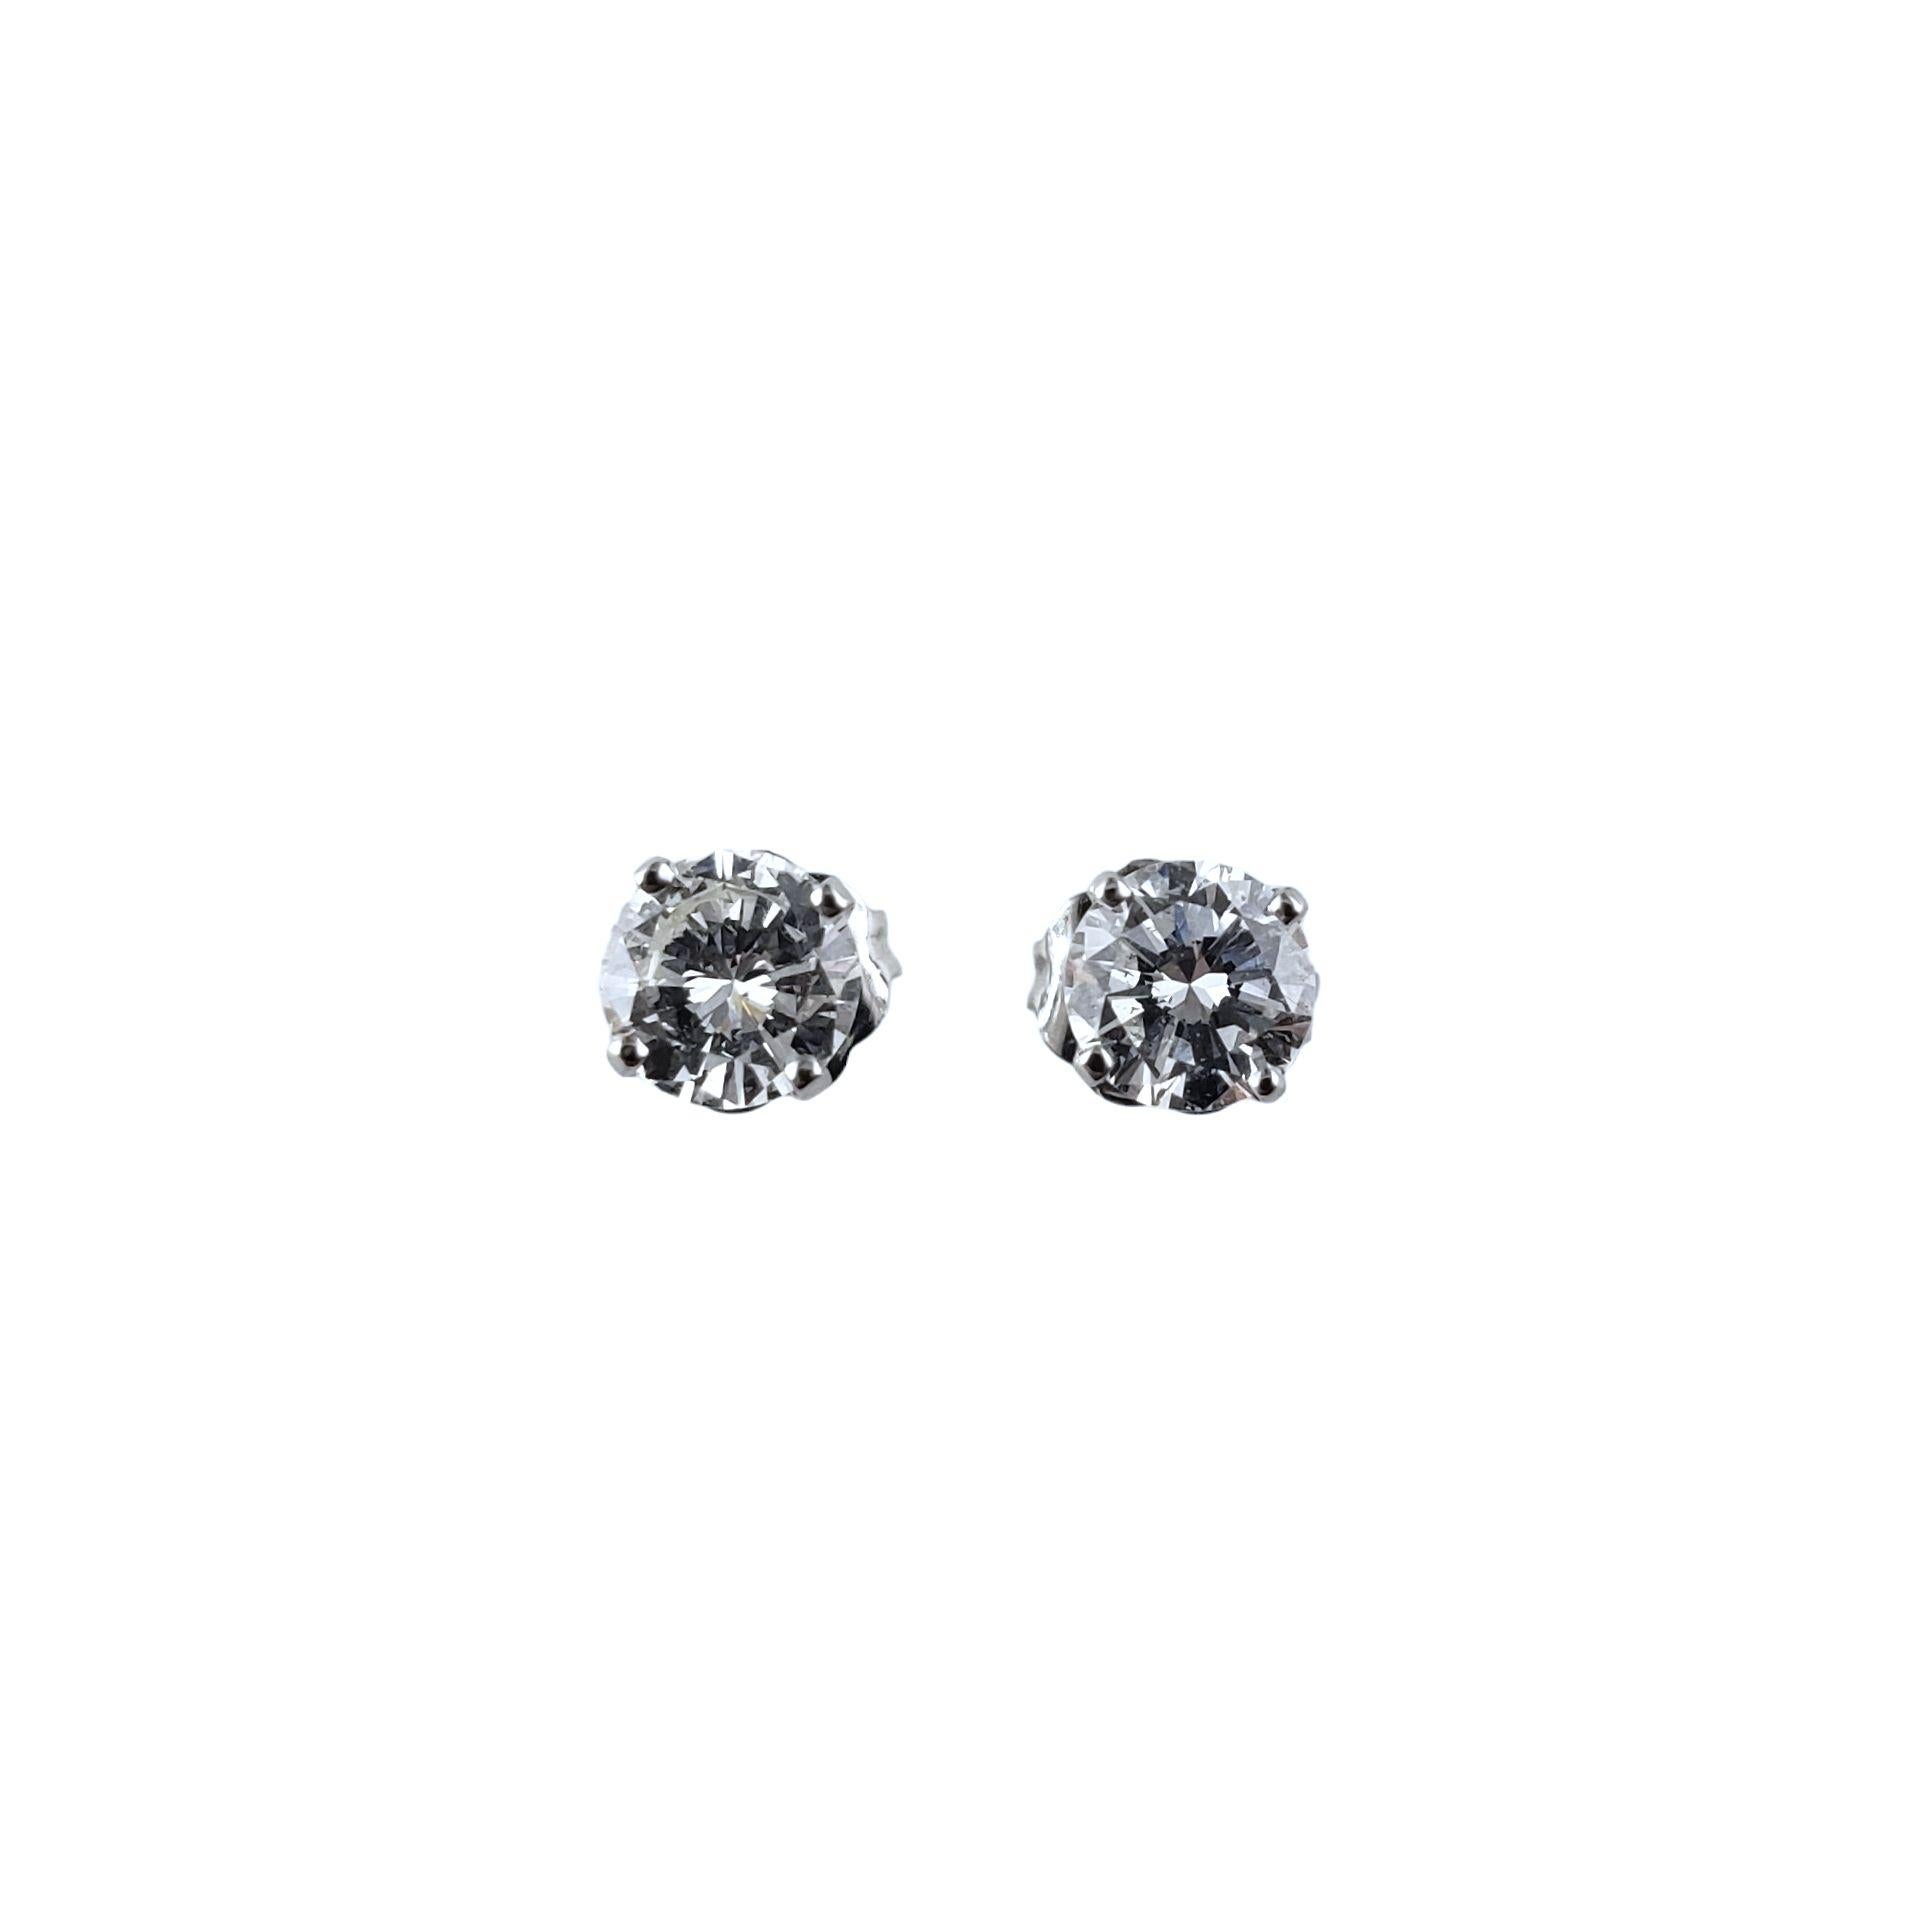 Women's 14 Karat White Gold Diamond Stud Earrings .90 TCW. #14047